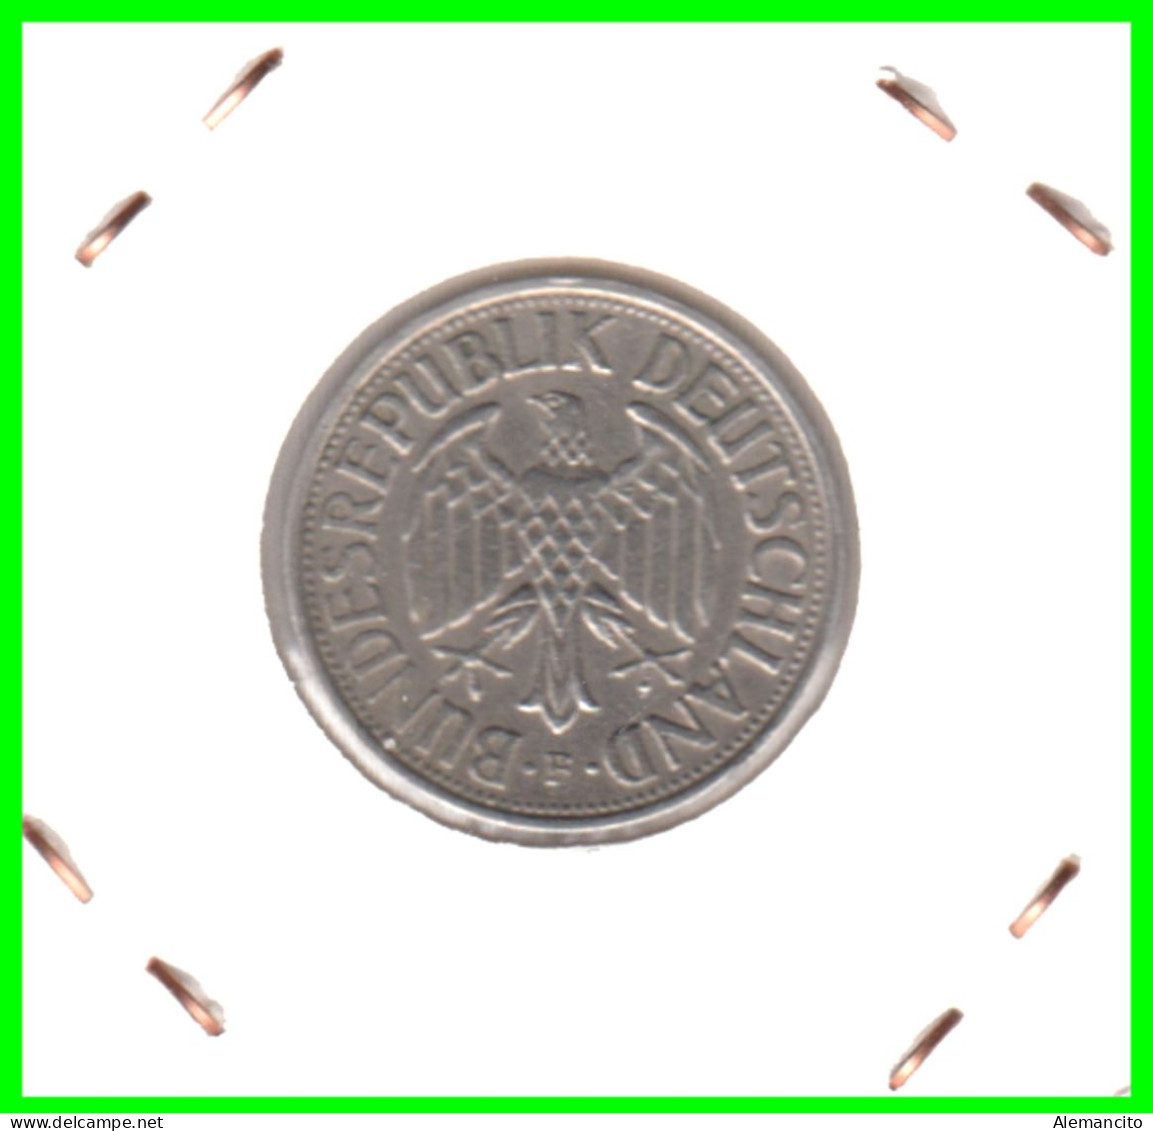 ALEMANIA FEDERAL - DEUTSCHLAND - GERMANY –  MONEDA DE LA REPUBLICA FEDERAL DE ALEMANIA DE 1.00 DM-DEL AÑO 1959 CECA-F - 1 Mark